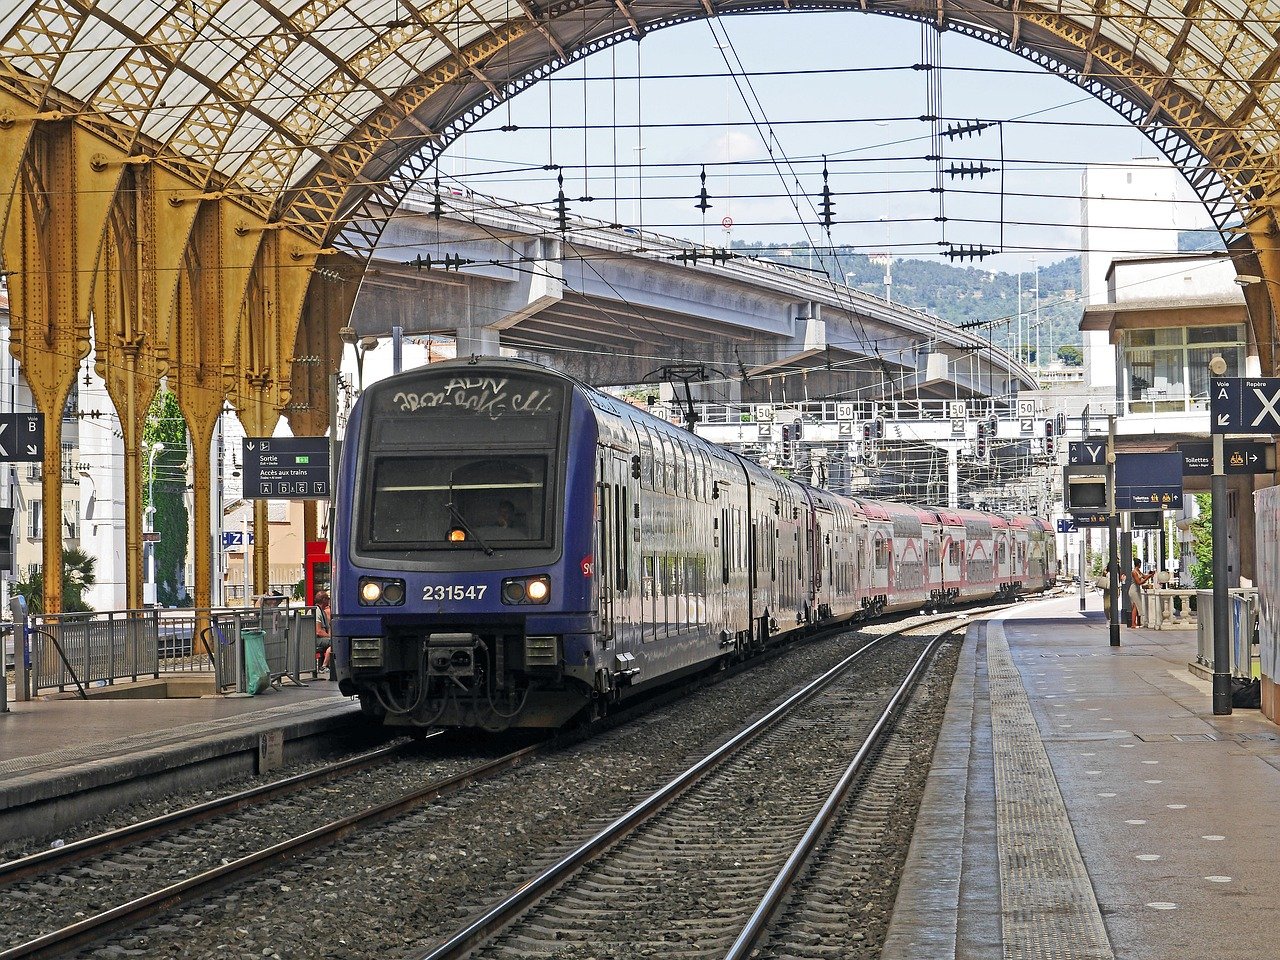 Le gouvernement veut ouvrir le dossier des billets SNCF gratuits pour les cheminots